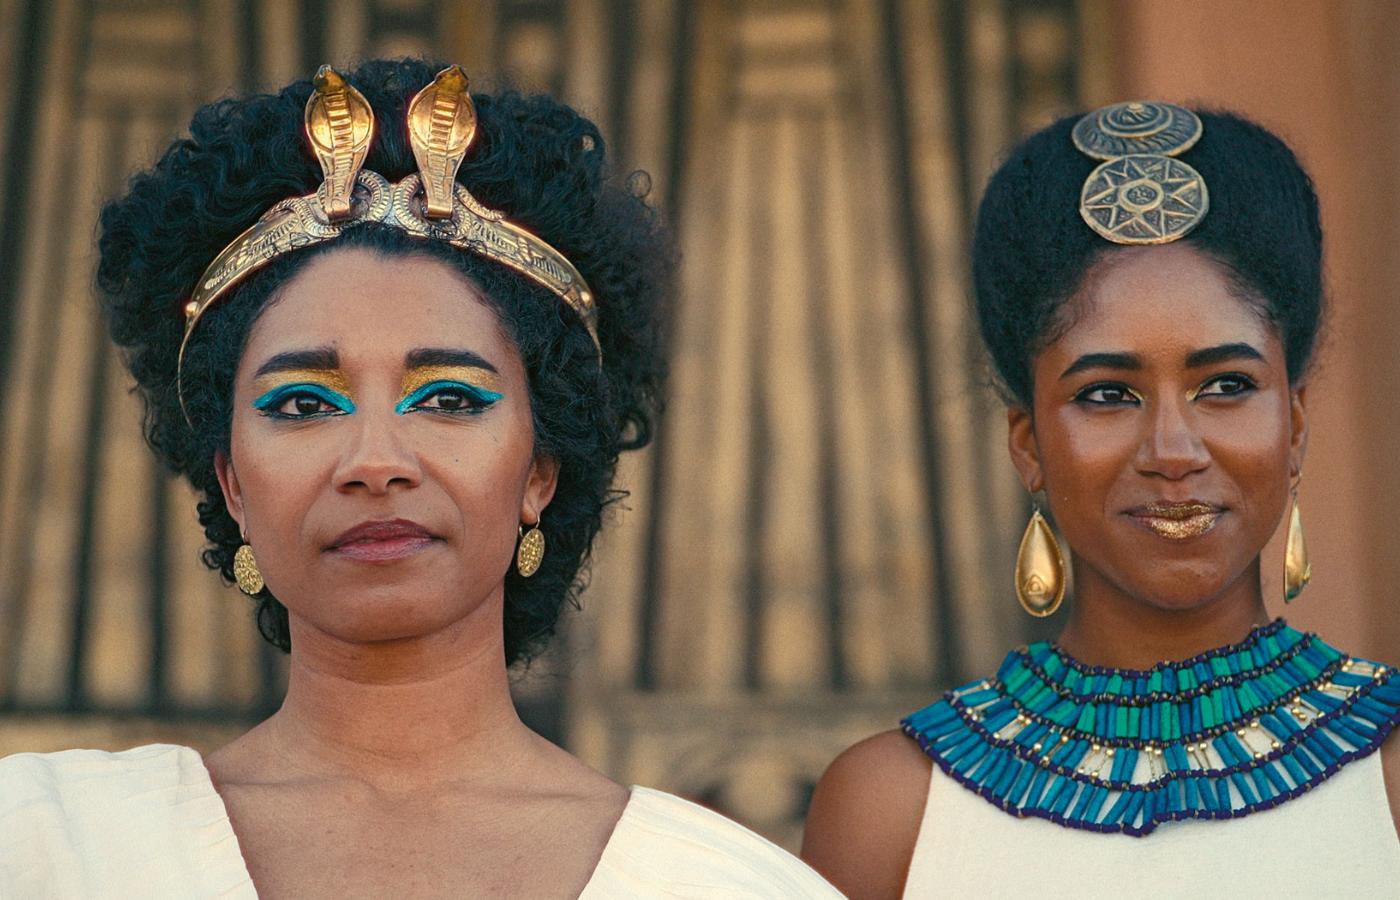 Po lewej: Adele James jako królowa Kleopatra
w fabularyzowanym dokumencie.